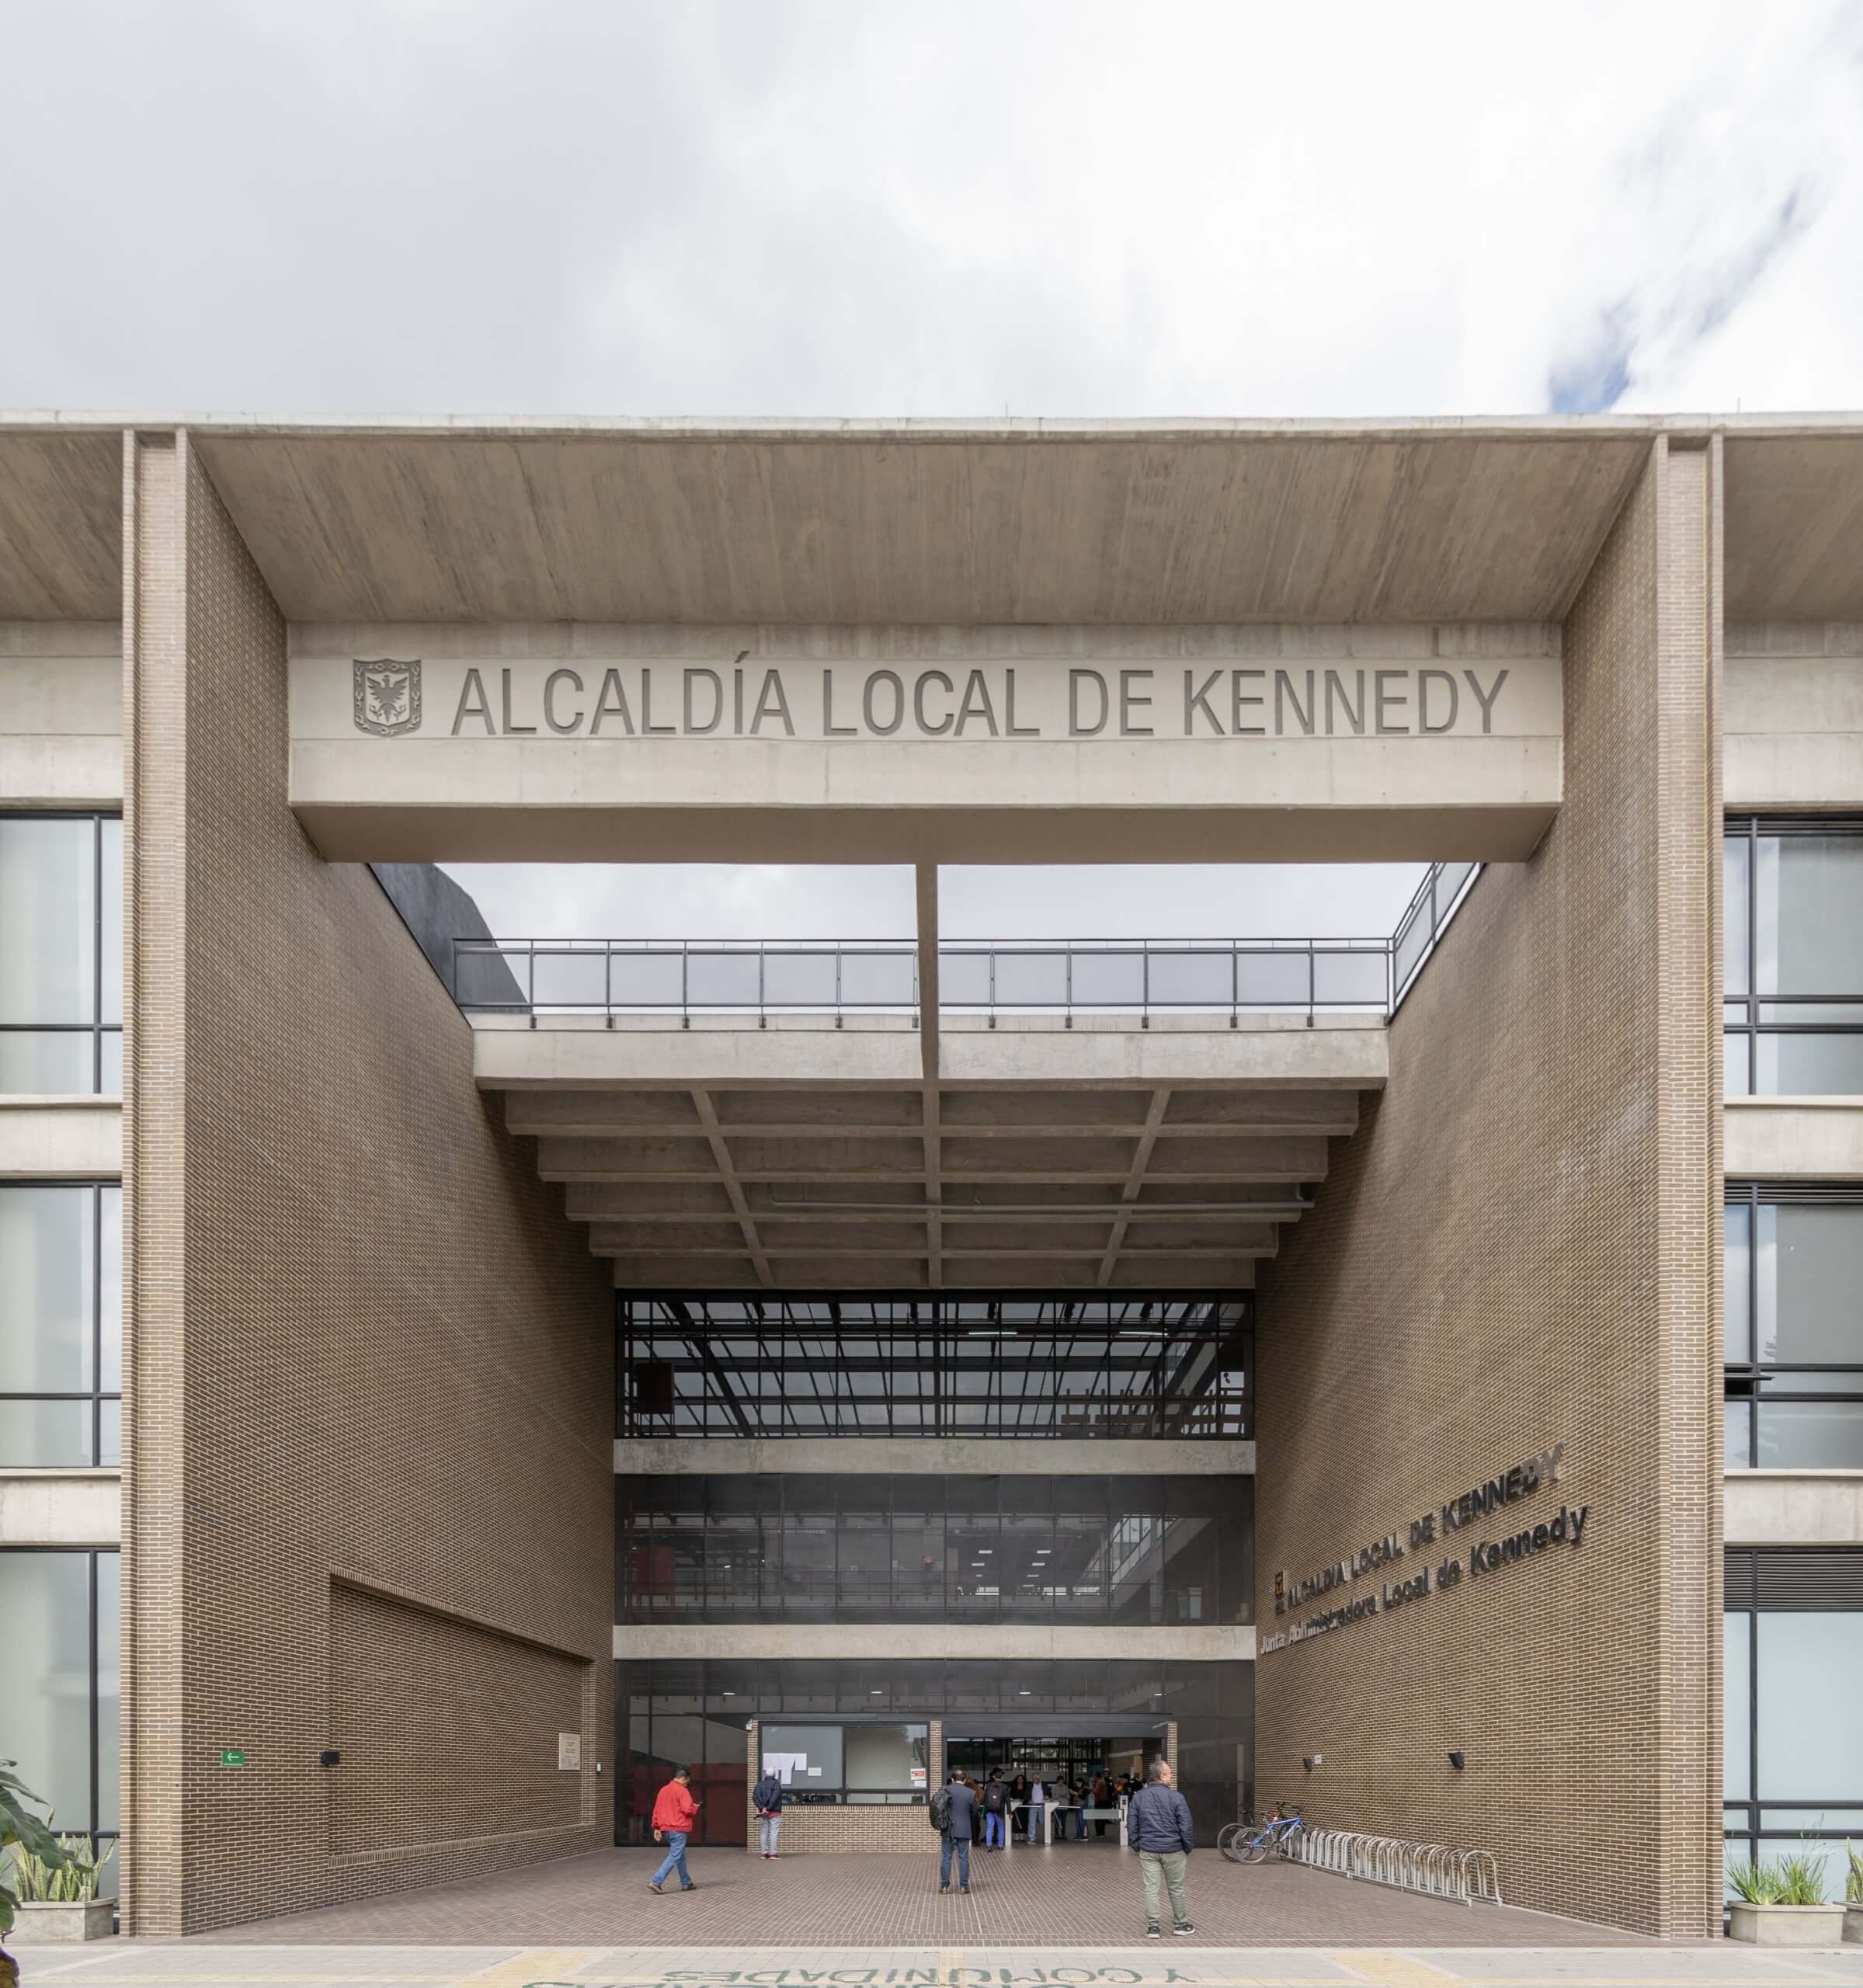 Alcaldia Local de Kennedy